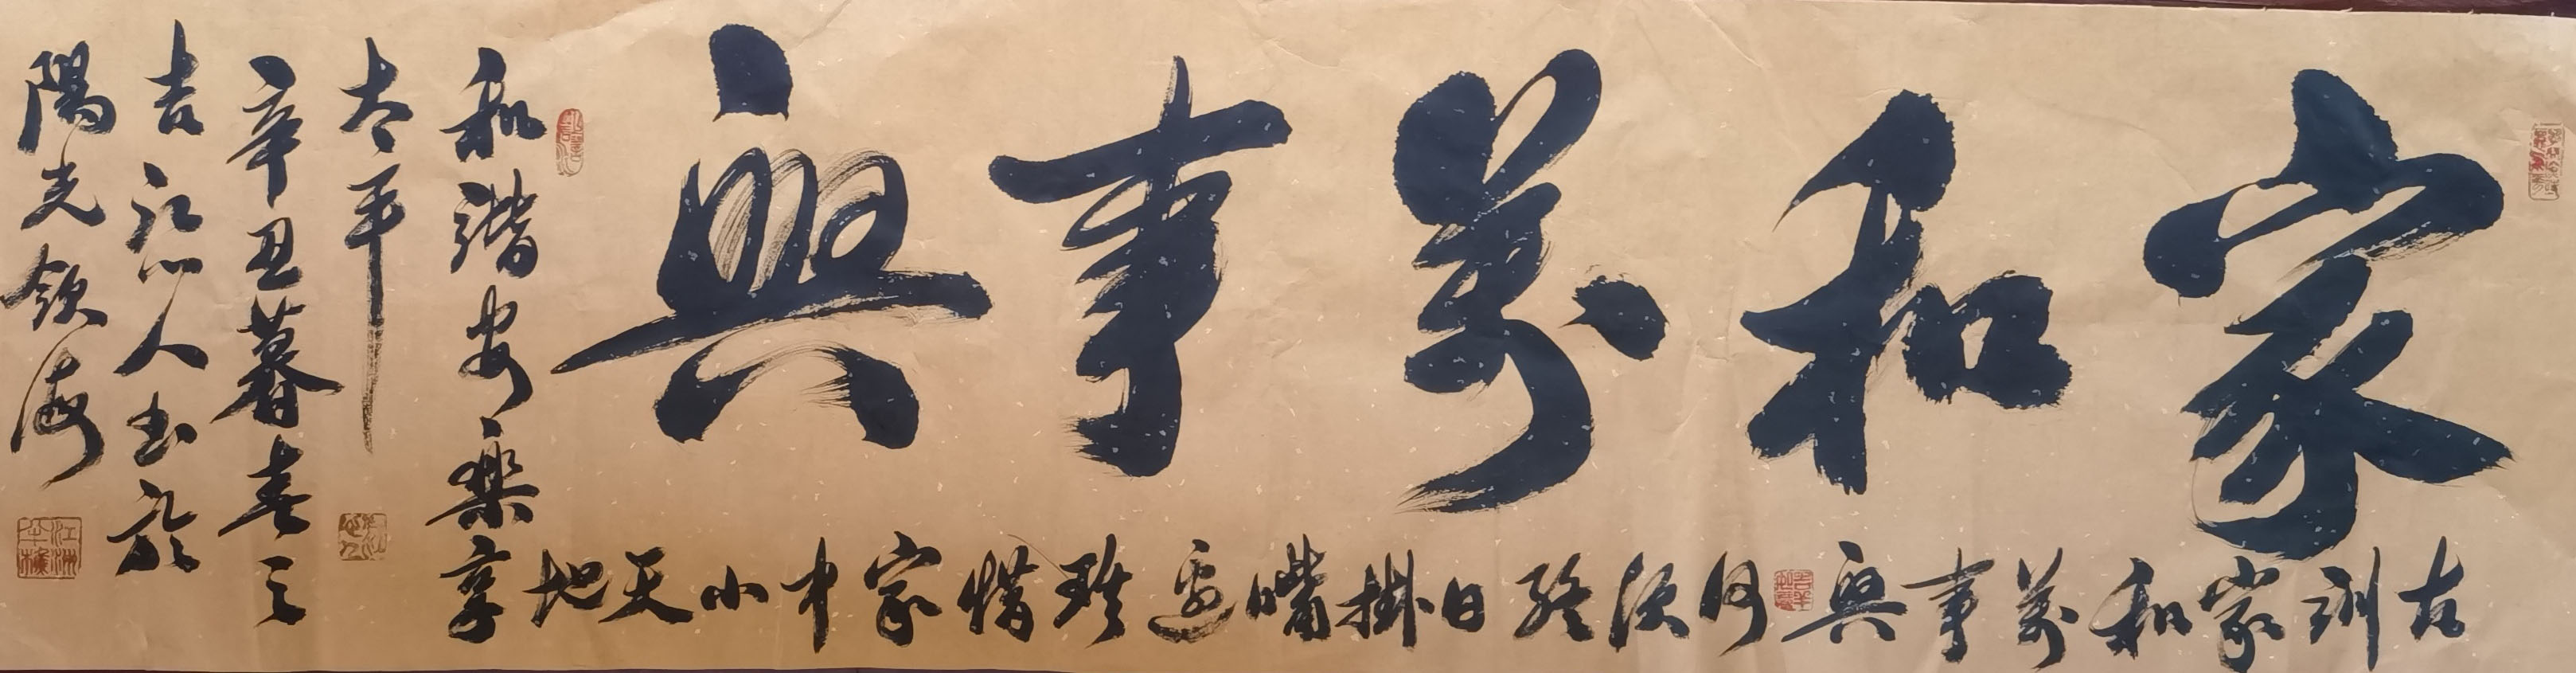 中国大众文化学会名人书画艺术发展委员会——金能庸